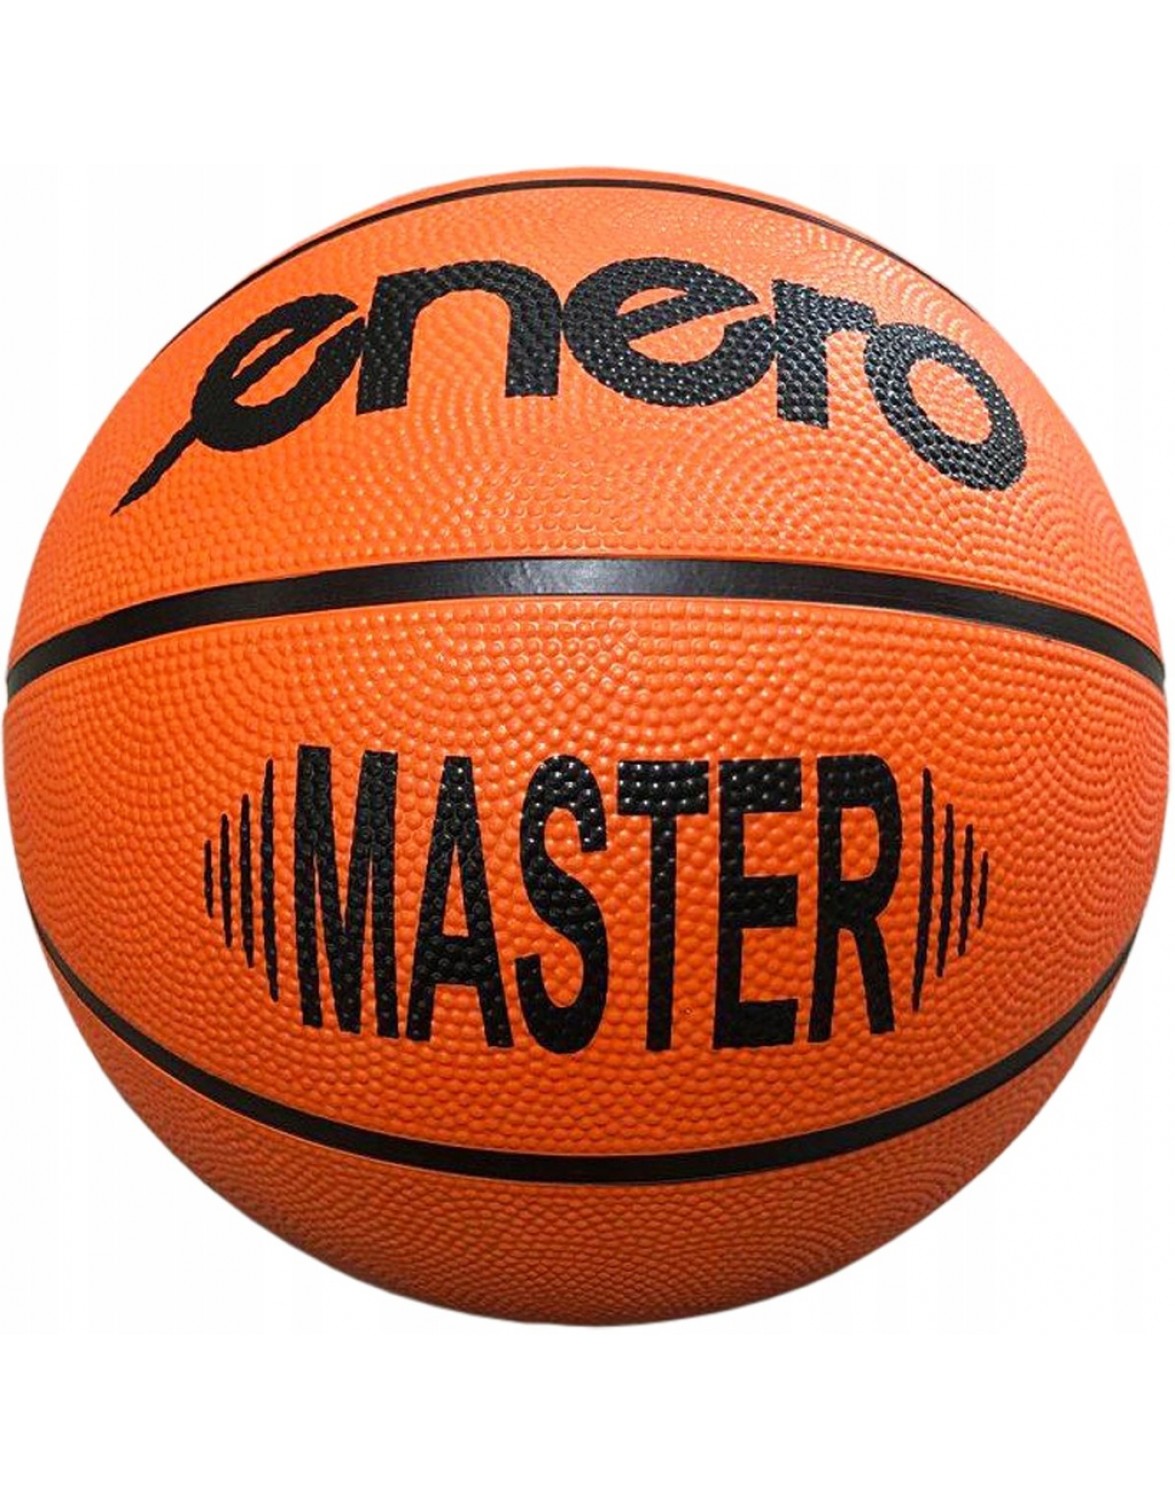 Баскетбольний м'яч Enero Master R. 6. ENERO MASTER 6 БАСКЕТБОЛЬНИЙ М'ЯЧ ДЛЯ ВІДПОЧИНКУ